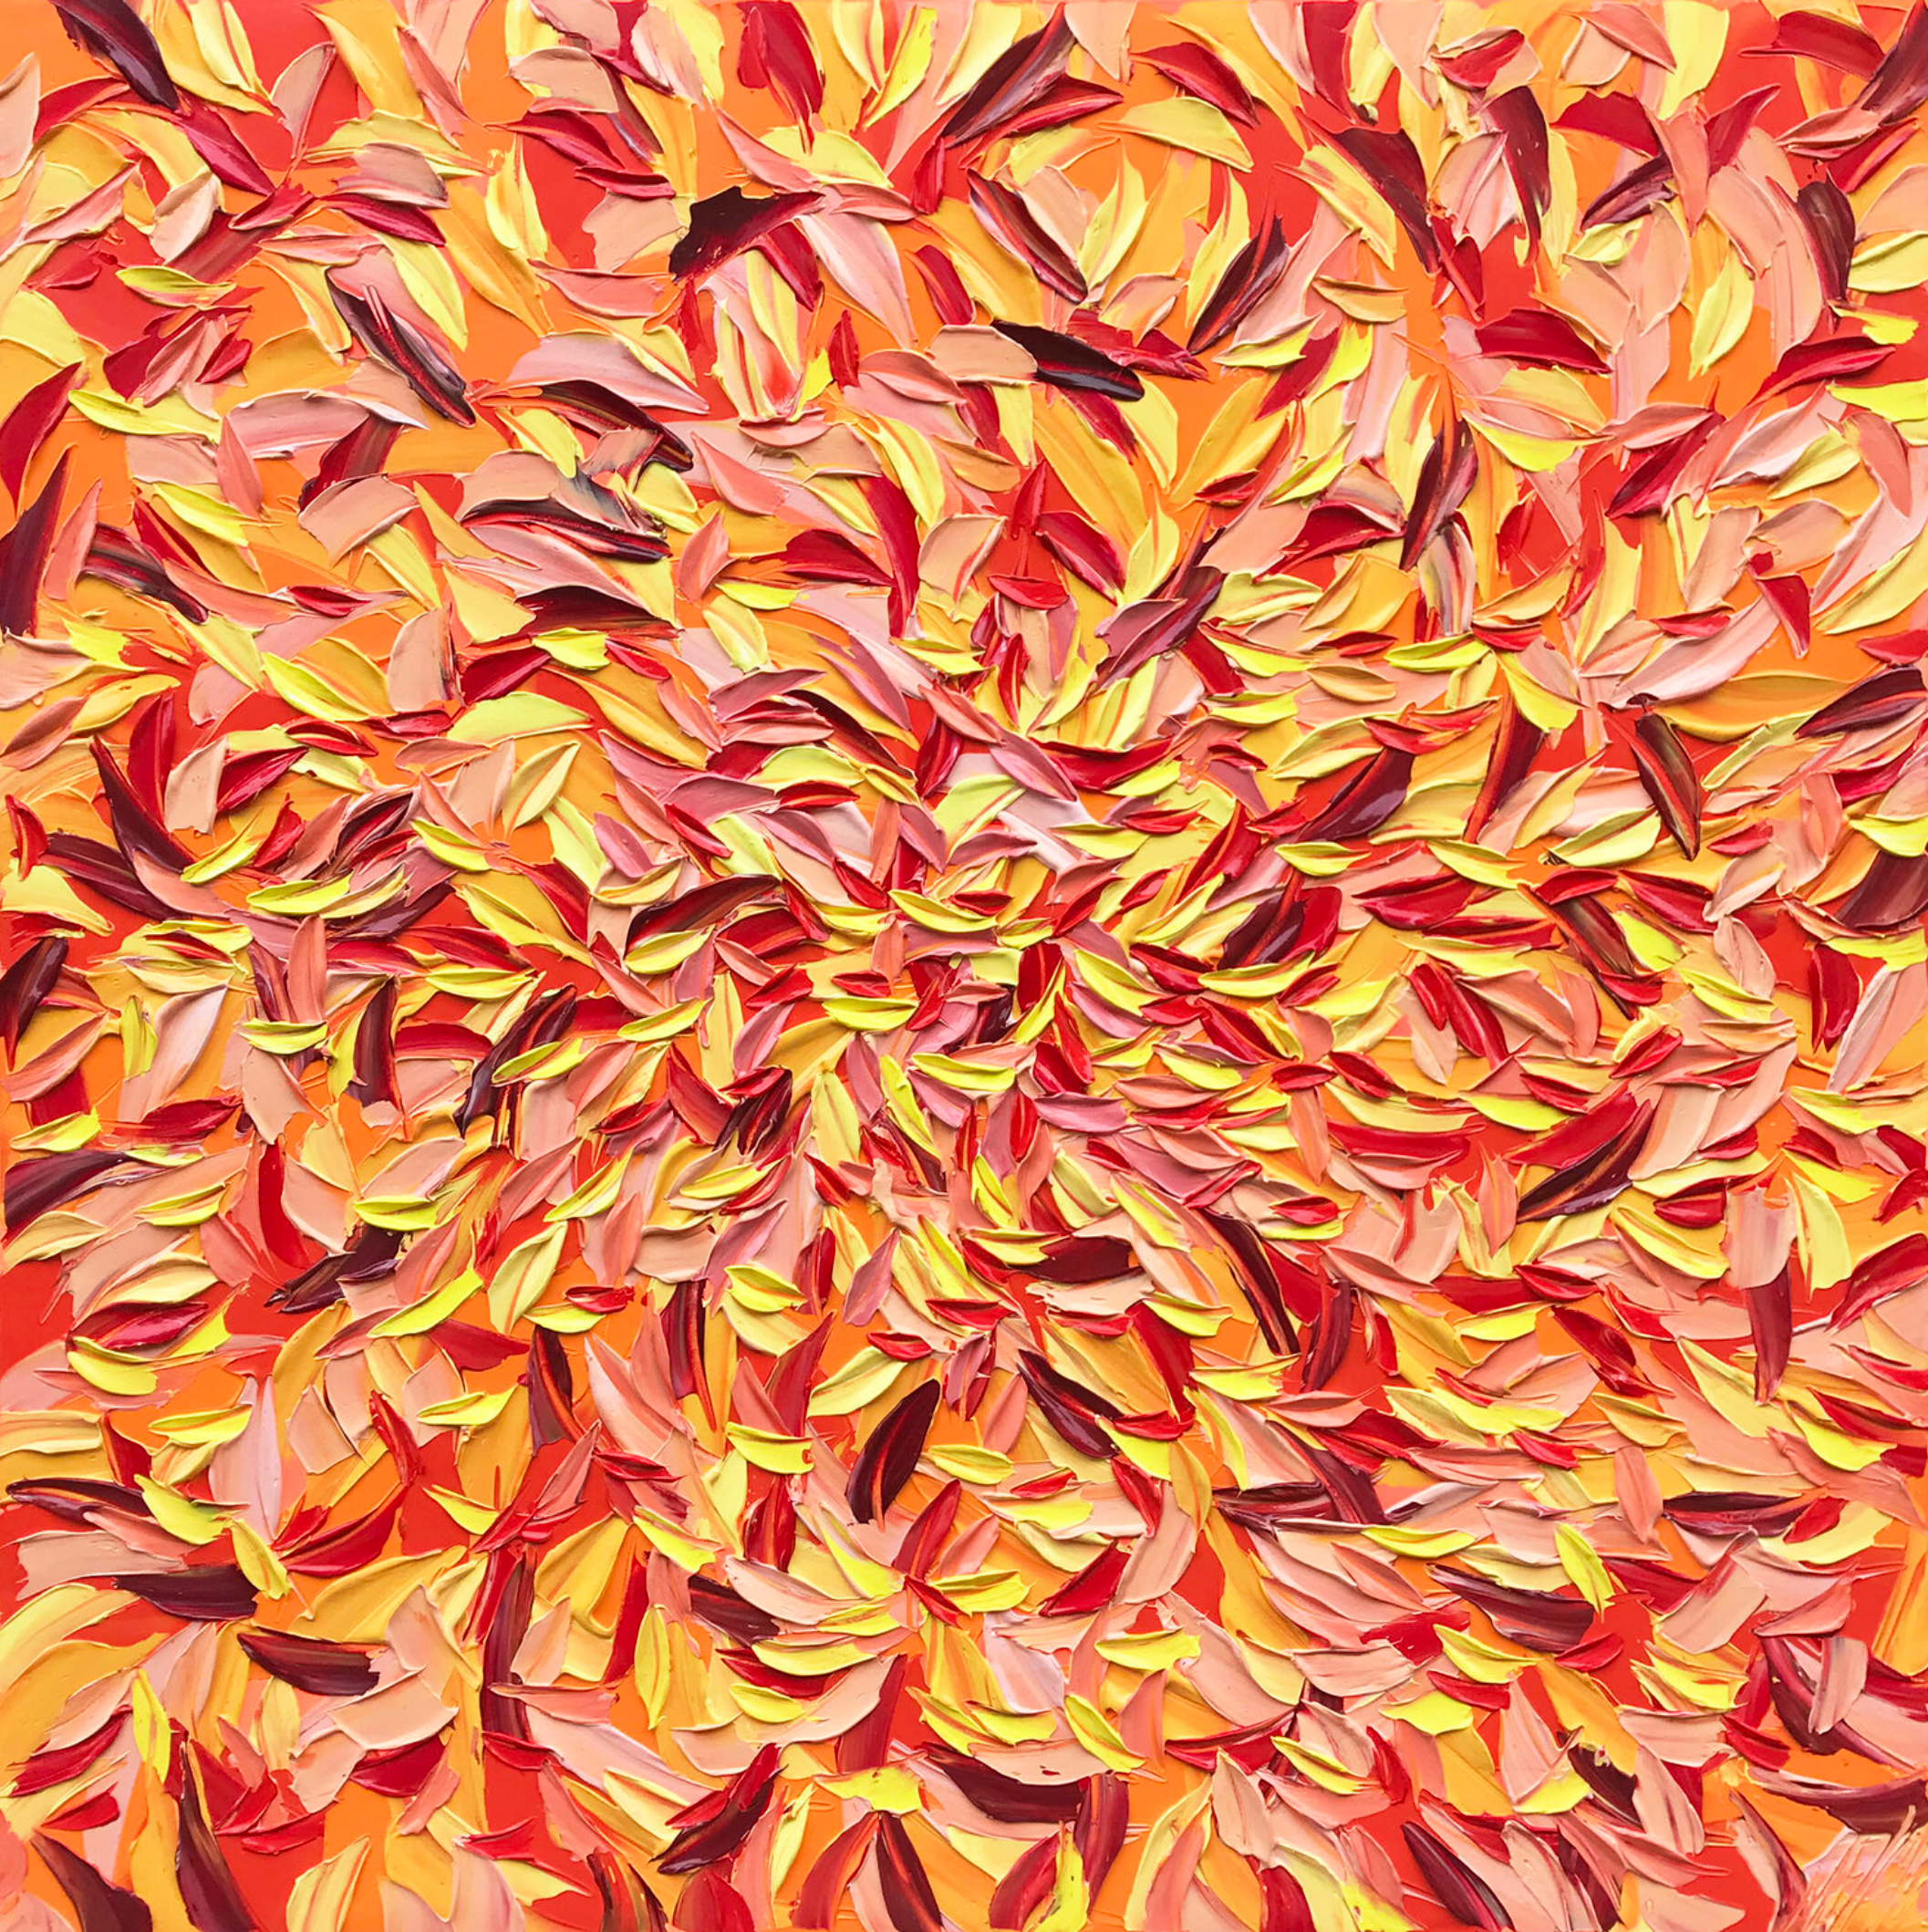 Oliver Messas "À la folie..." Peinture abstraite de feuilles colorées